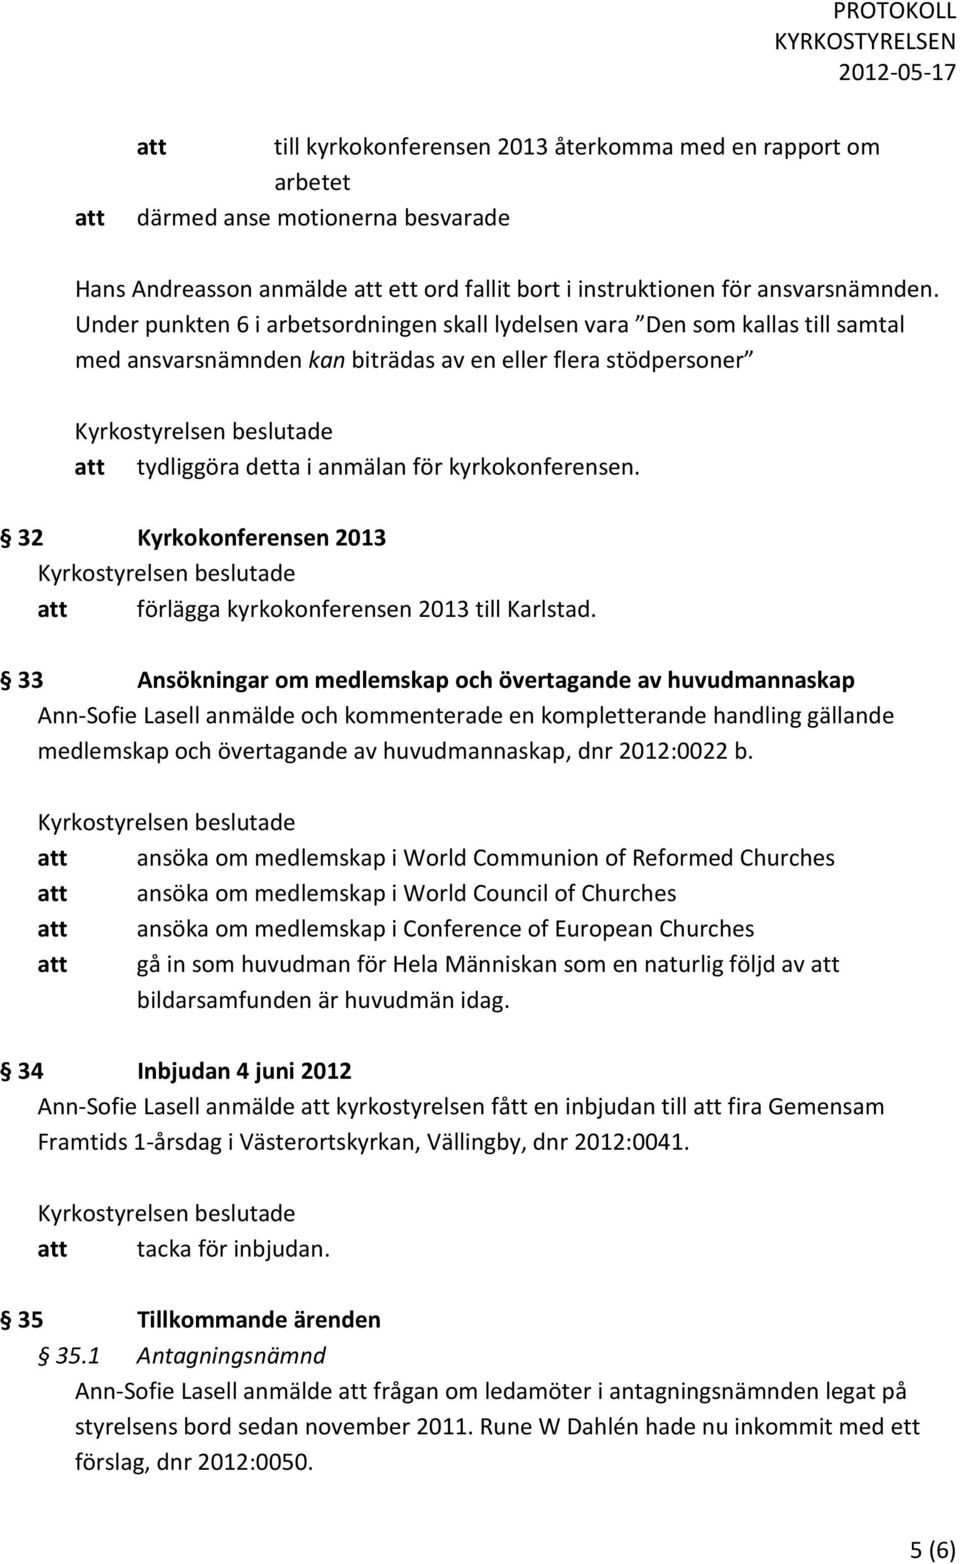 32 Kyrkokonferensen 2013 att förlägga kyrkokonferensen 2013 till Karlstad.